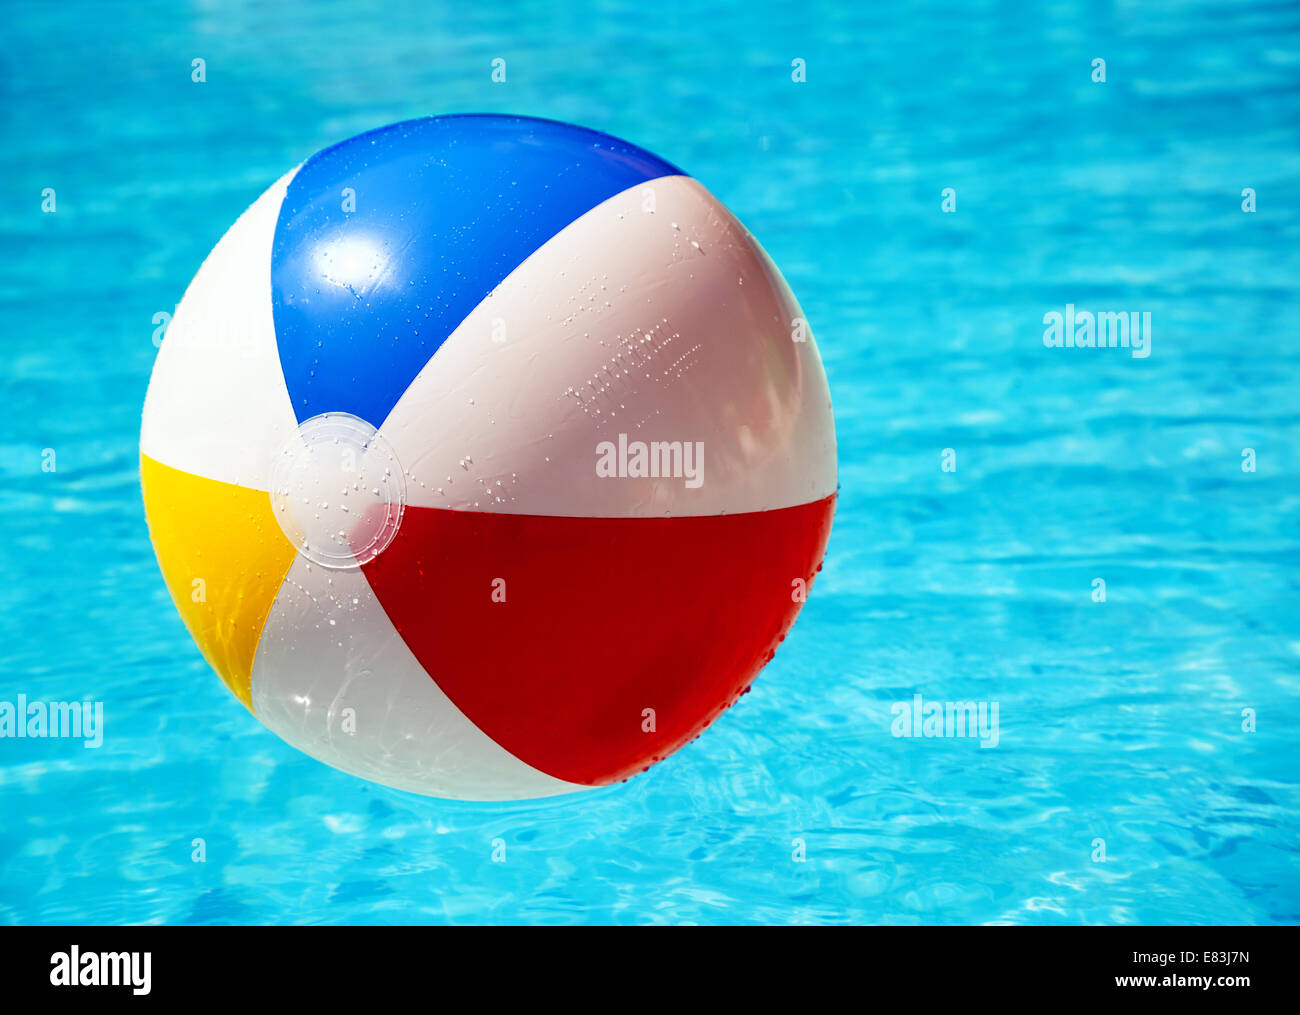 Ballon de plage piscine Banque D'Images